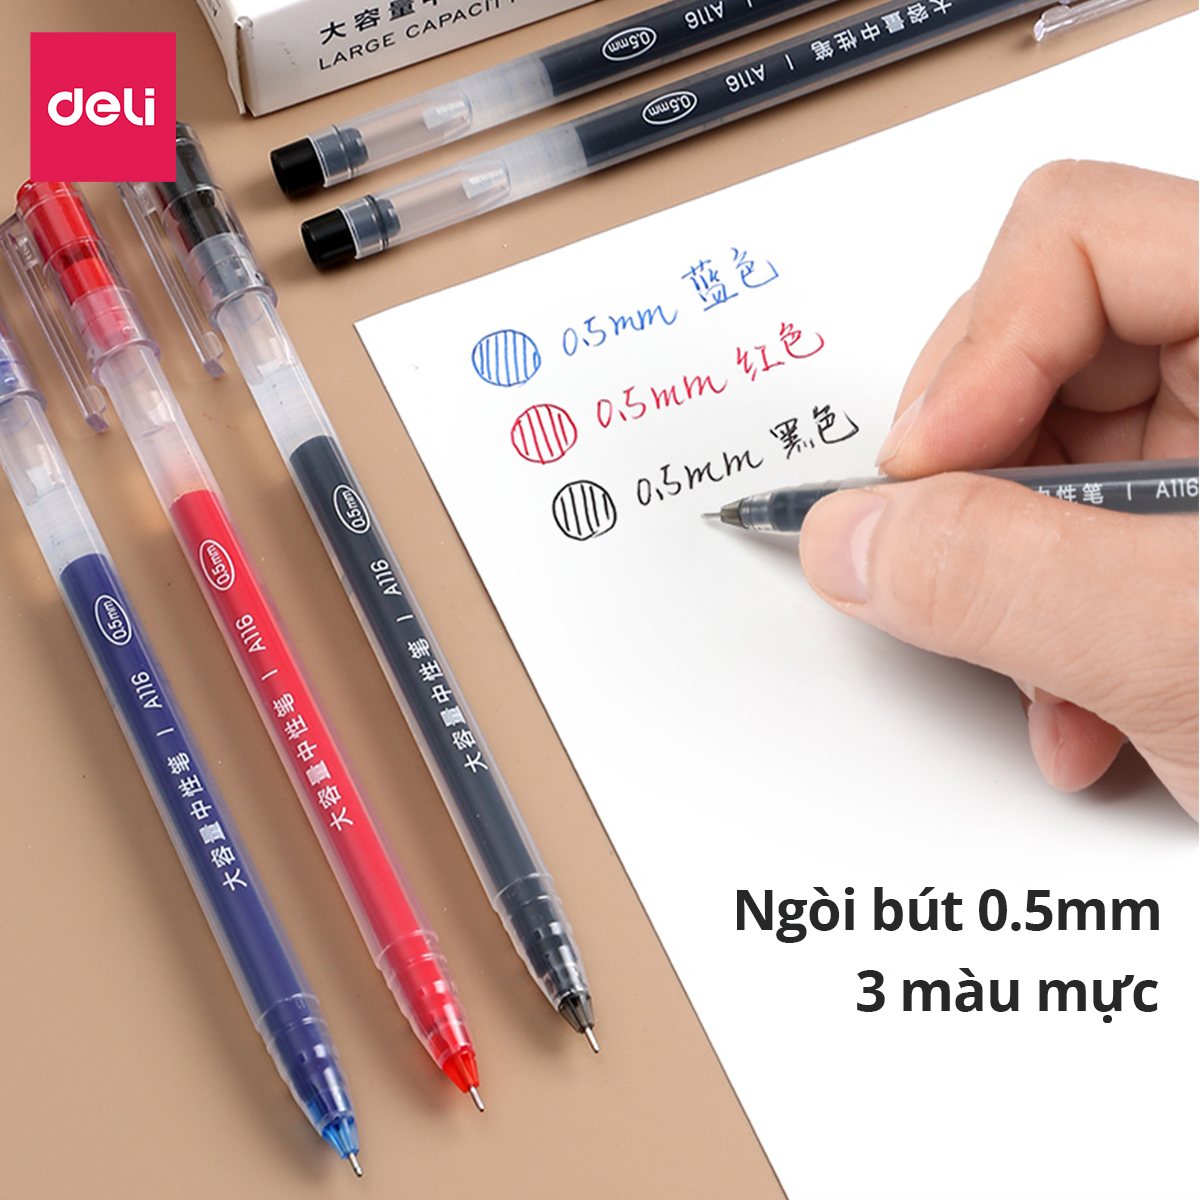 Bút gel 0.5mm Deli nhiều màu lựa chọn - Bút bi nước - 1 chiếc - Mực đỏ / Xanh / Đen - A116